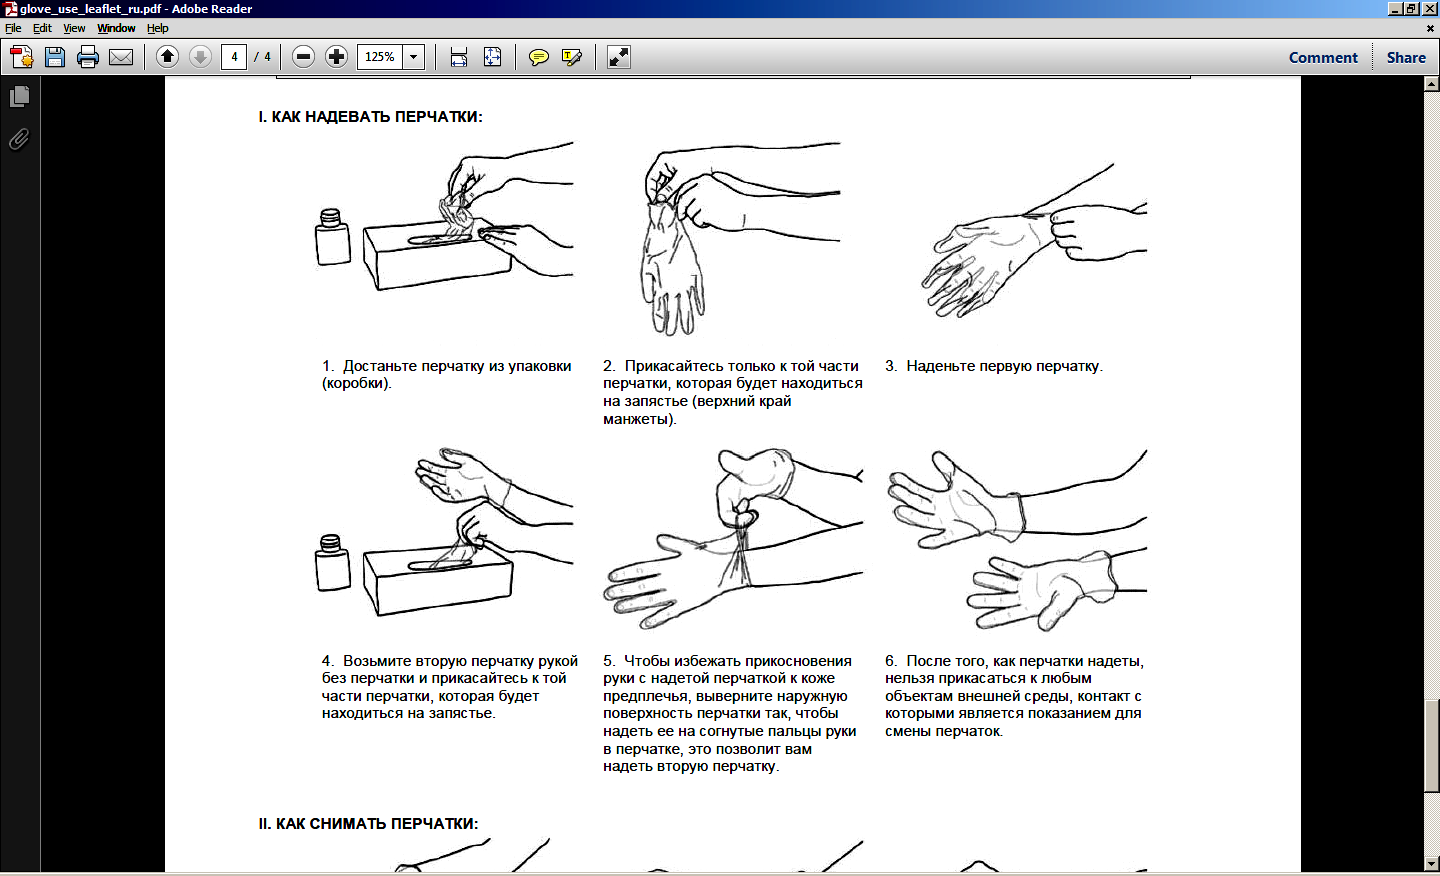 Алгоритм стерильных перчаток. Надевание и снимание стерильных перчаток. Надевание стерильных медицинских перчаток. Одевание стерильных и нестерильных перчаток. Схема надевания стерильных перчаток.